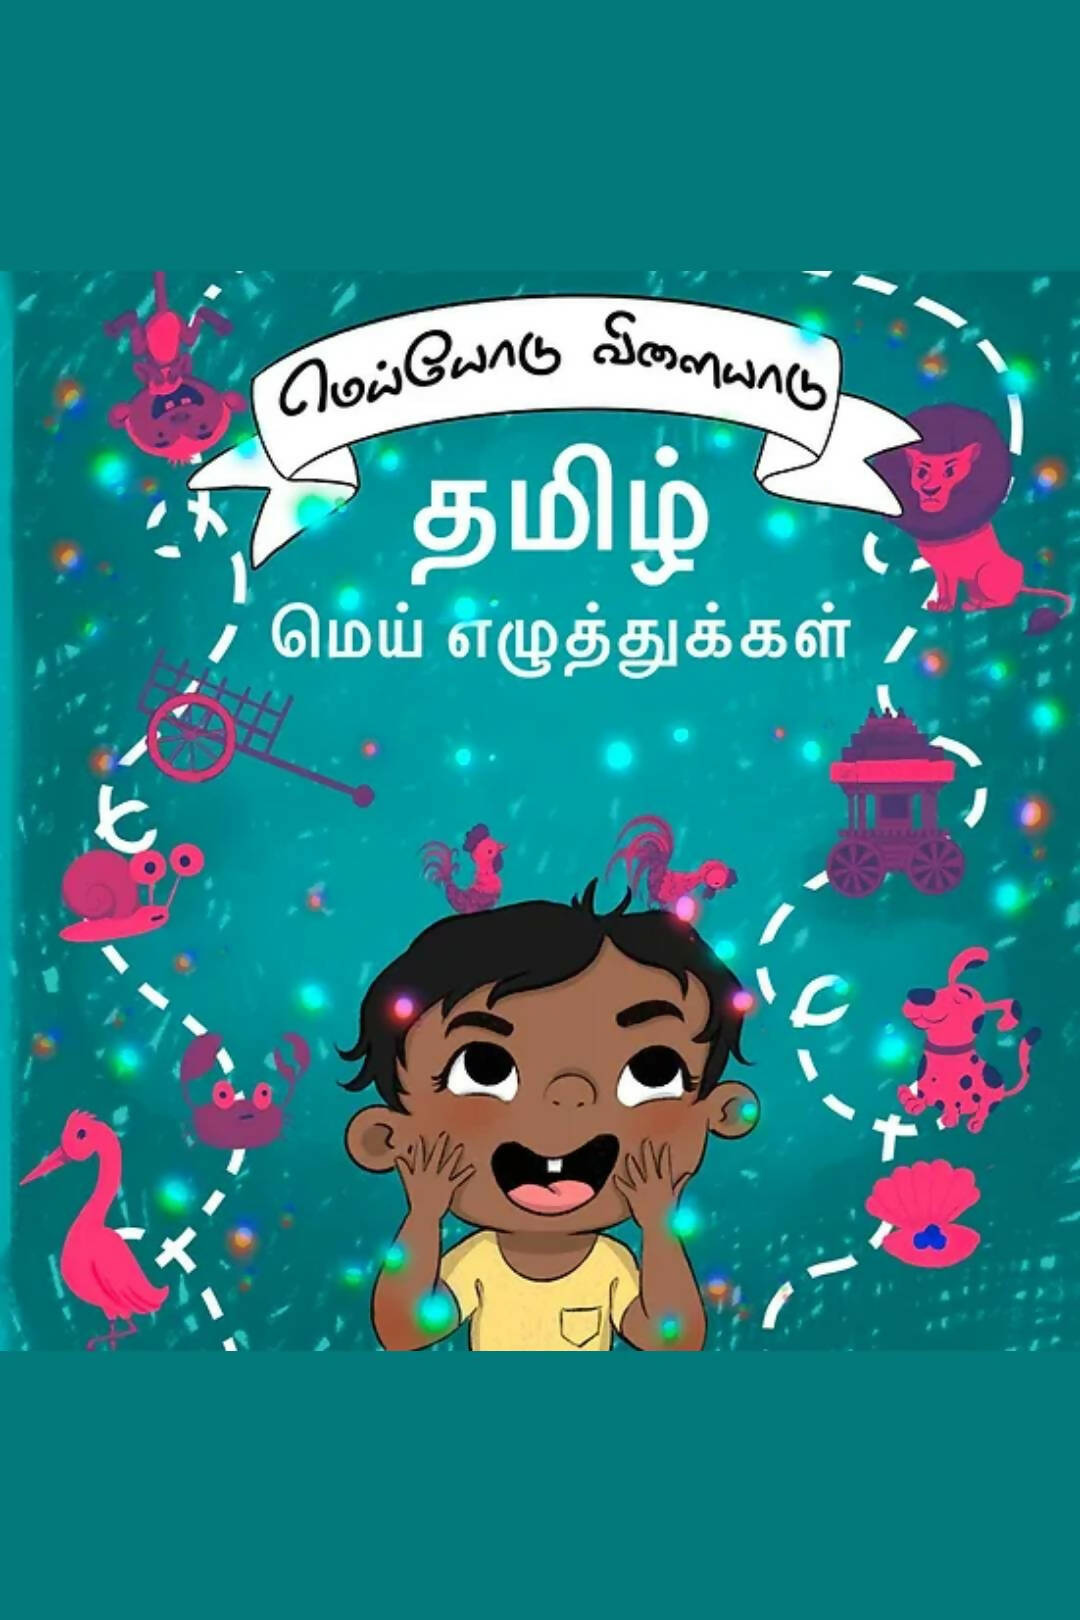 மெய்யோடு விளையாடு தமிழ் மெய் எழுத்துக்கள் (Tamil Consonants Board Book)